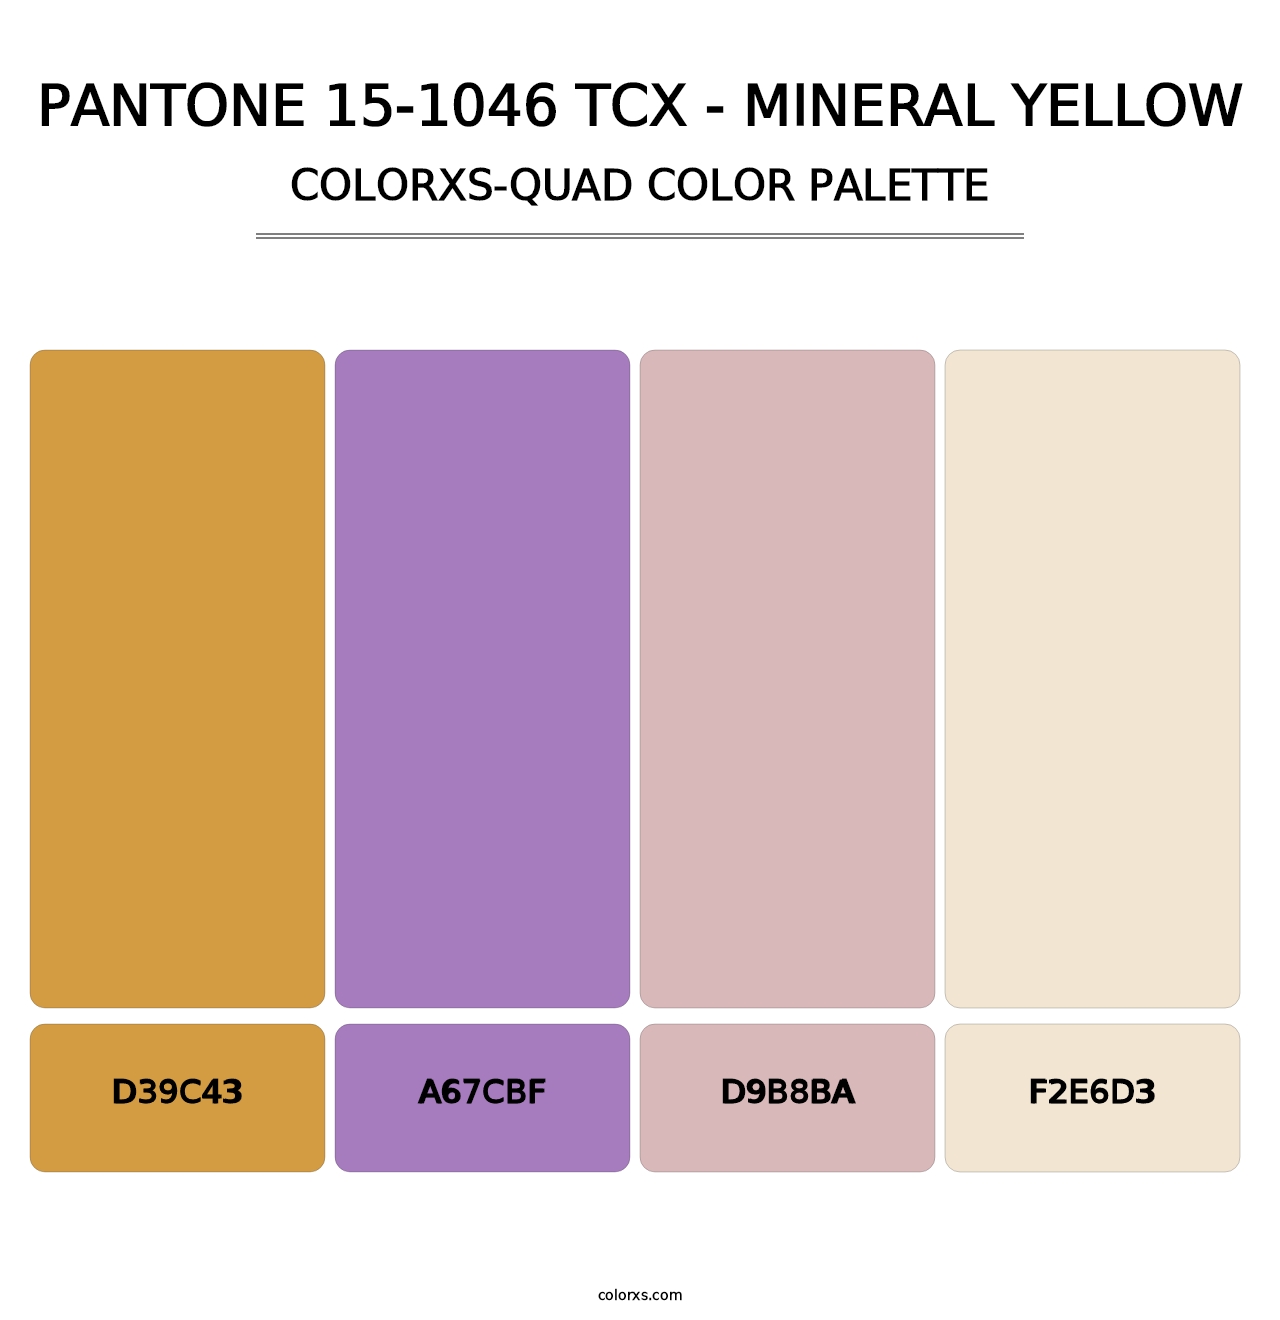 PANTONE 15-1046 TCX - Mineral Yellow - Colorxs Quad Palette